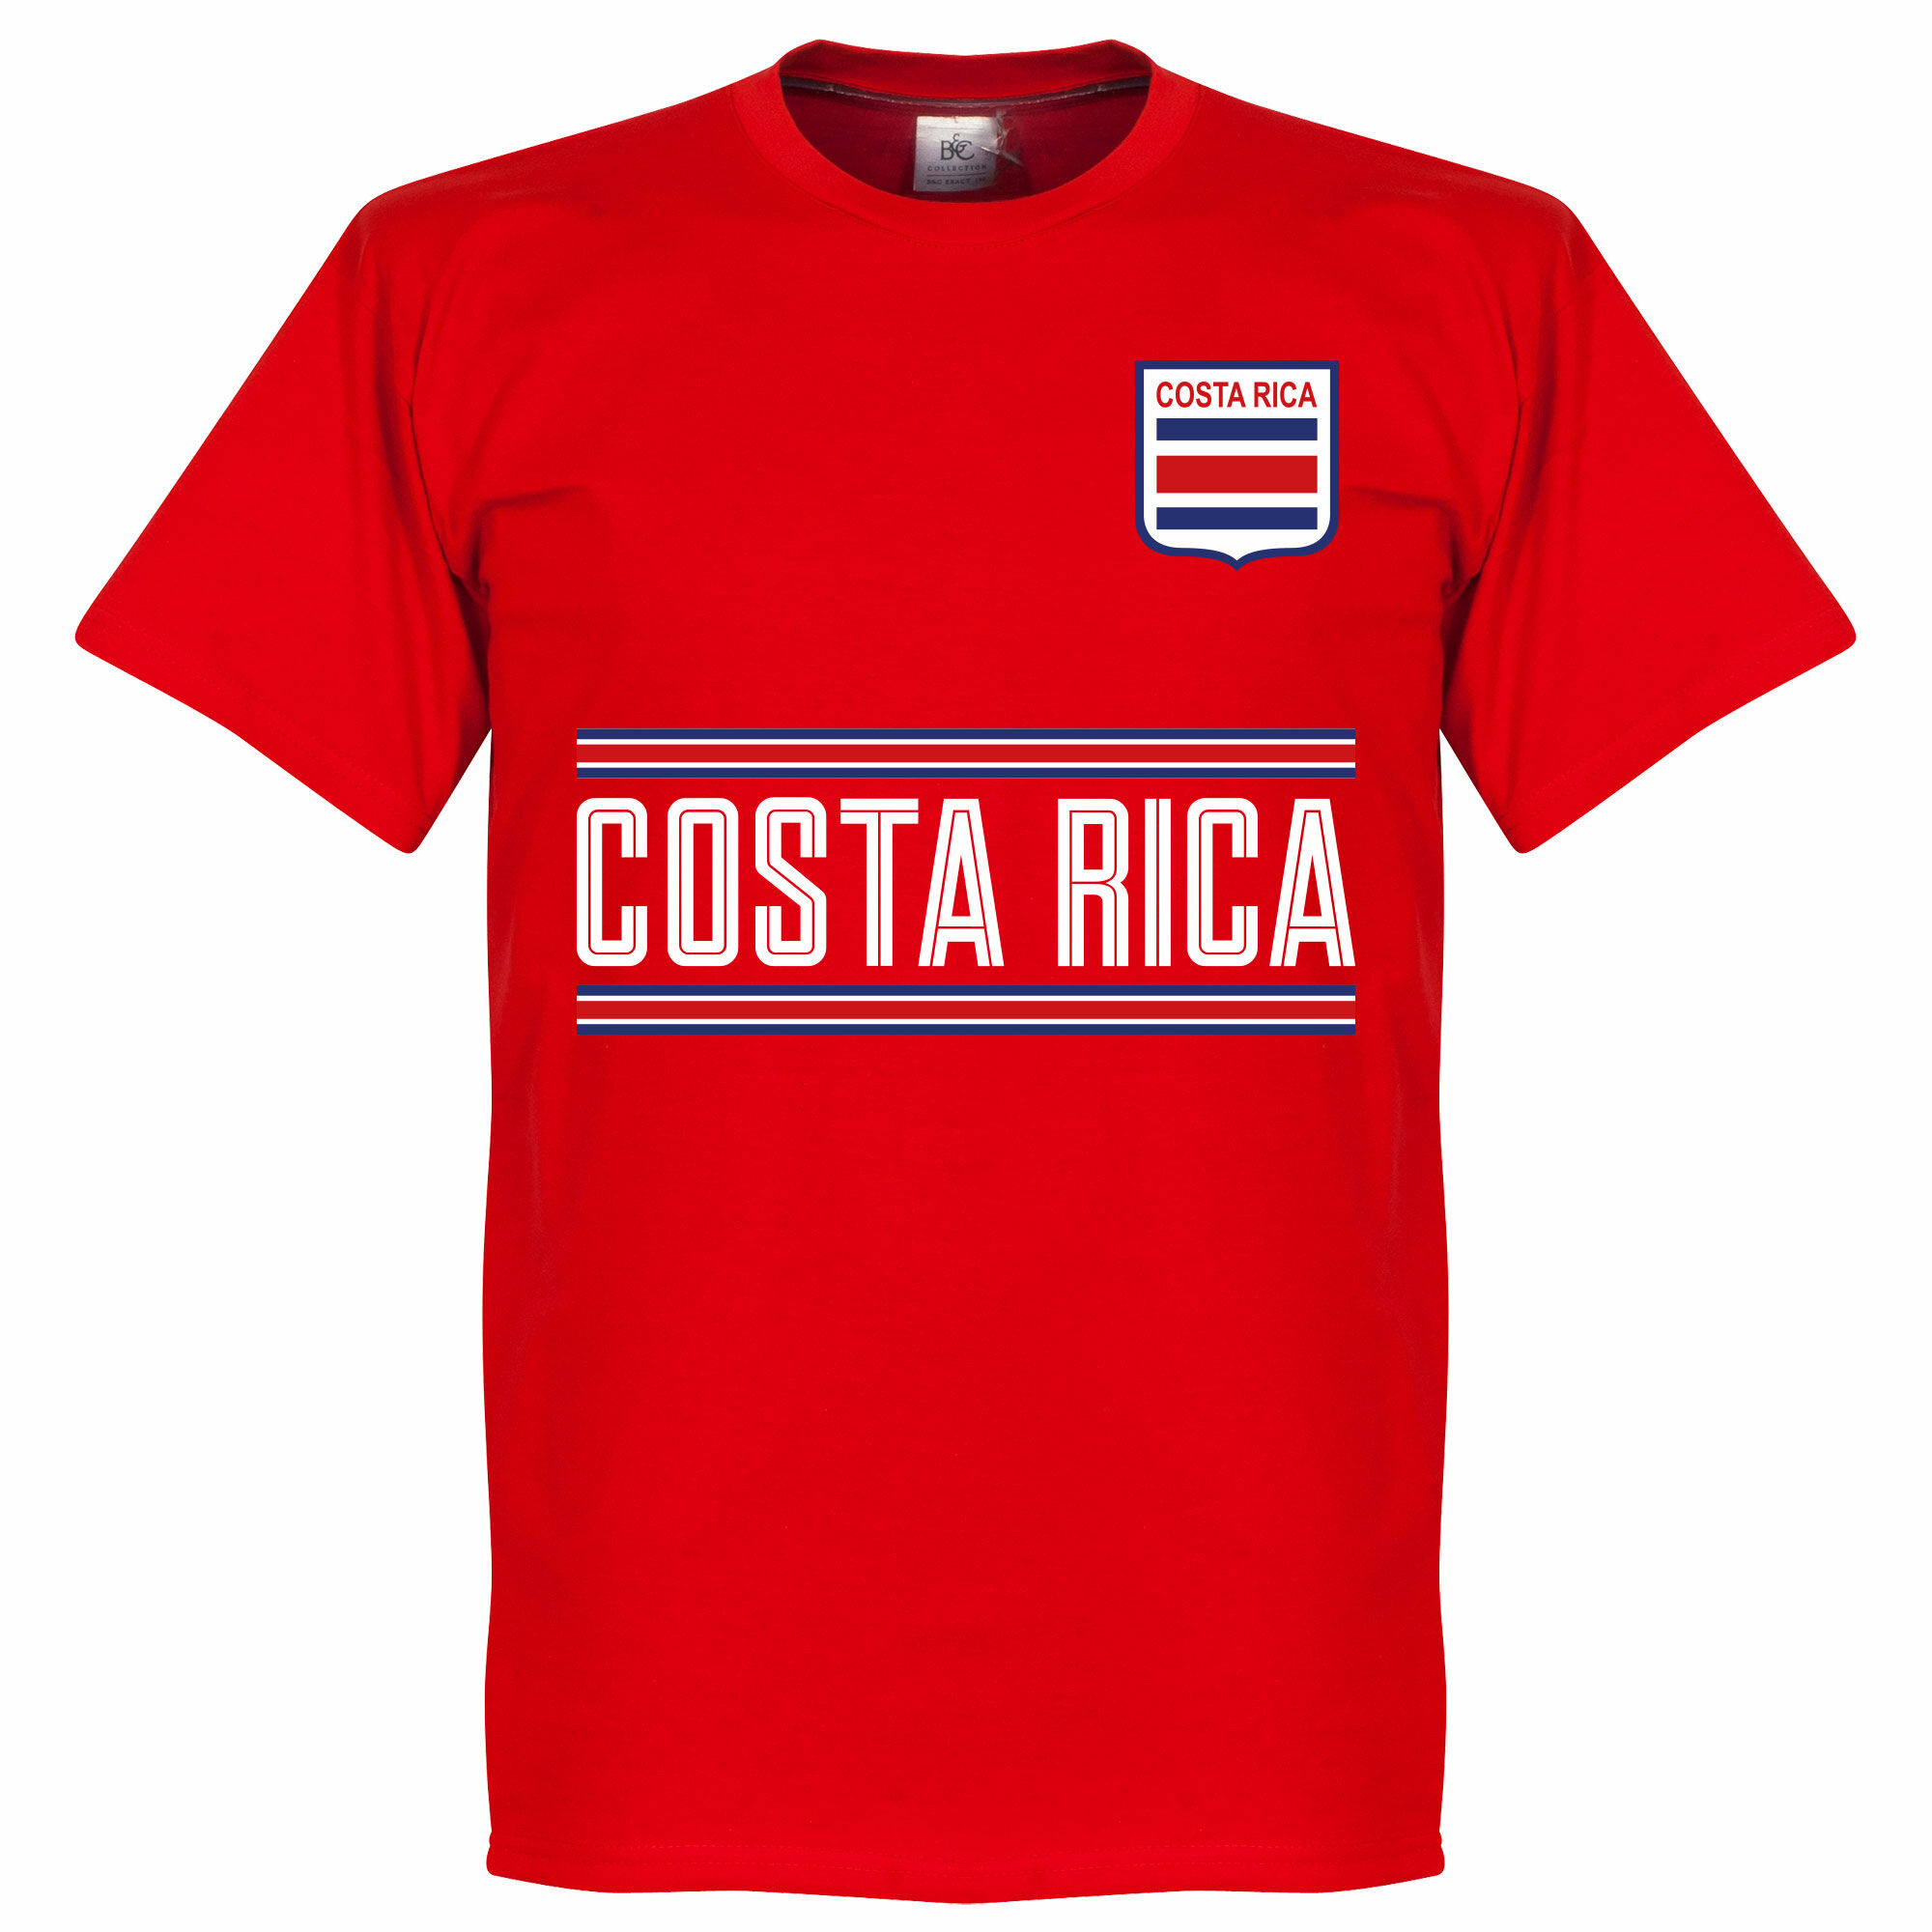 Kostarika - Tričko - červené